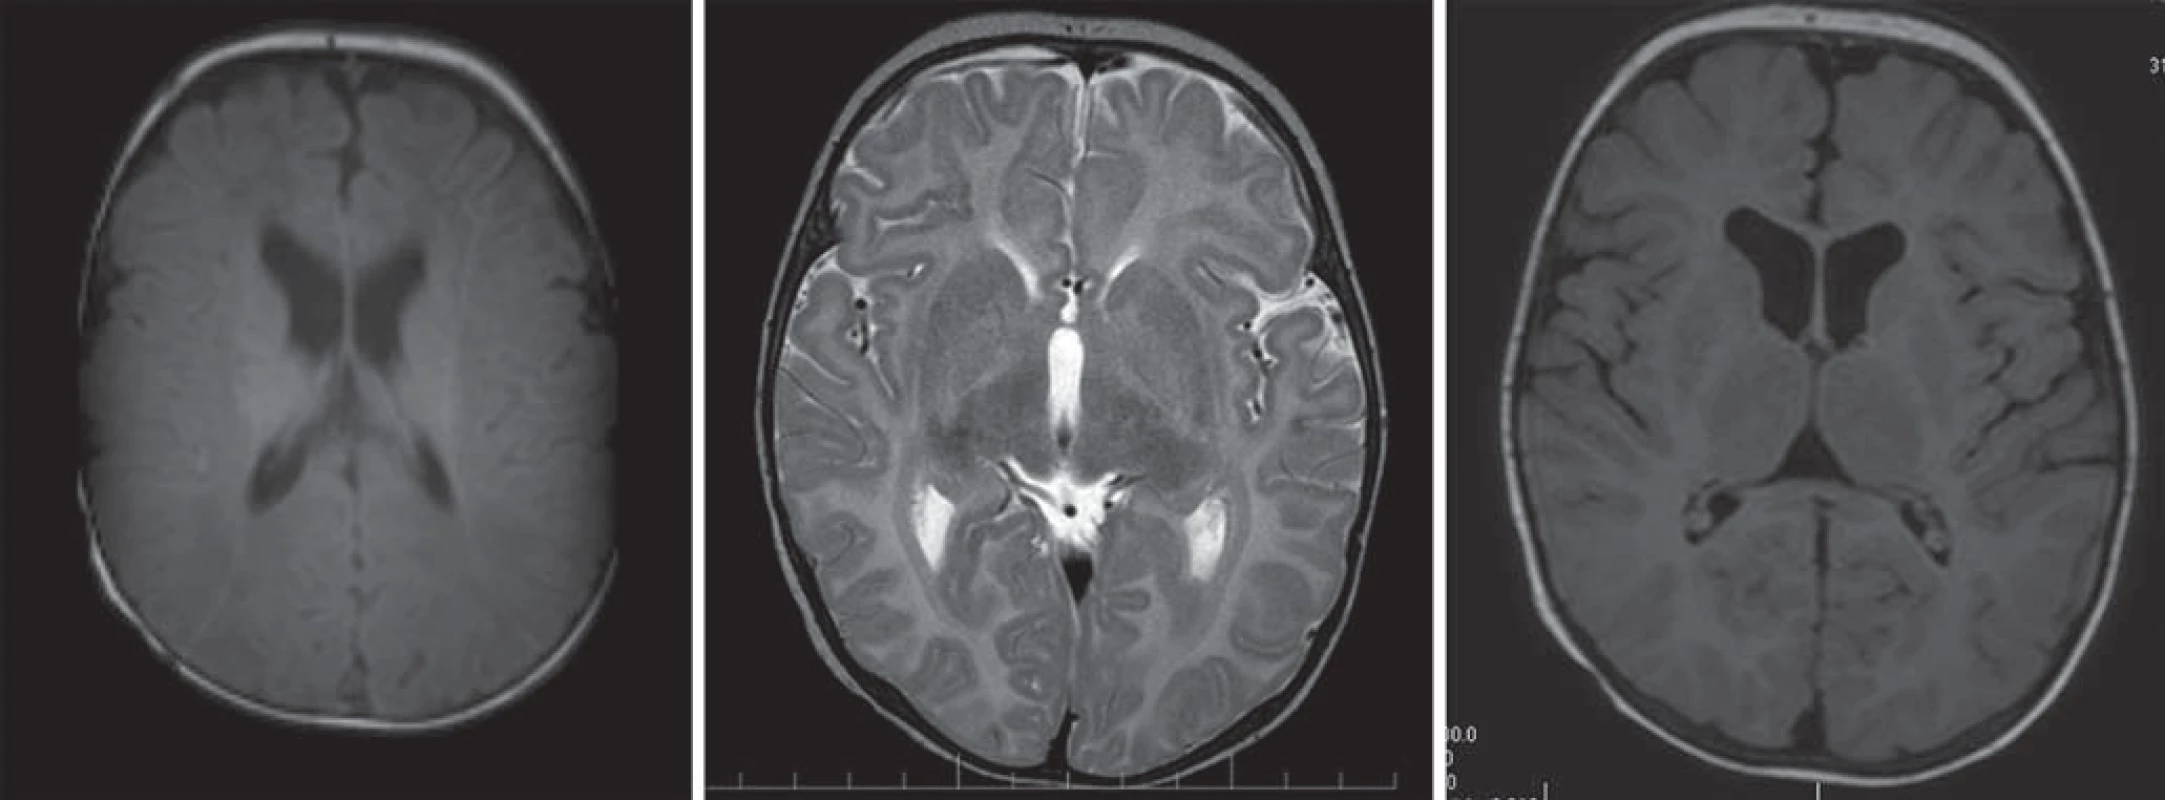 Pelizaeus-Merzbacherova choroba, 8-mesačný chlapec.
Obr. 5a) T1WI – znížená intenzita signálu postihnutých oblastí charakteru hypomyelinizácie.
Obr. 5b, c) T2WI (b) a FLAIR (c) s difúznou zmenou zvýšeného signálu charakteru hypomyelinizácie.